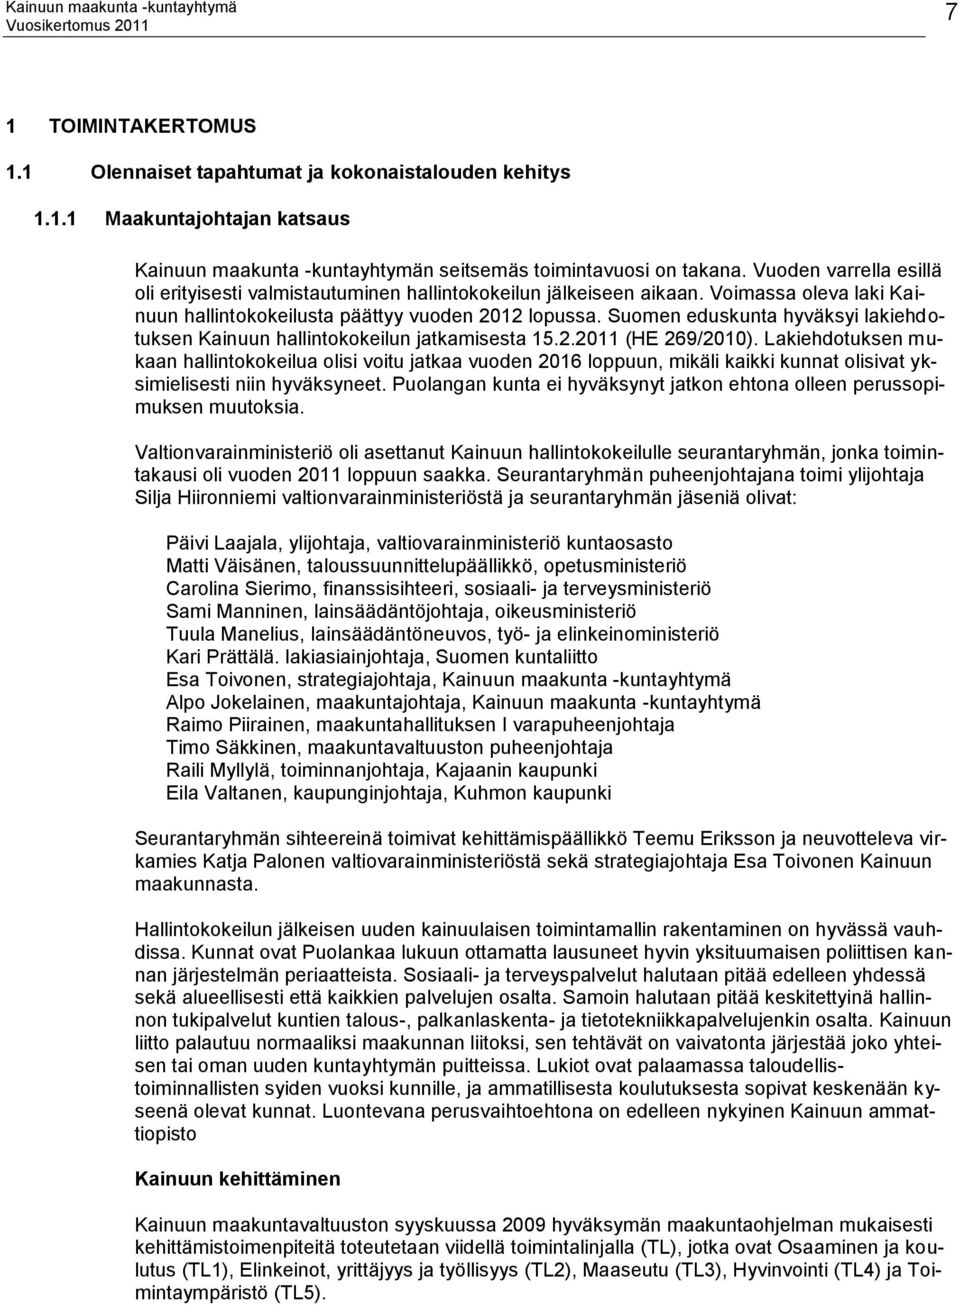 Suomen eduskunta hyväksyi lakiehdotuksen Kainuun hallintokokeilun jatkamisesta 15.2.2011 (HE 269/2010).